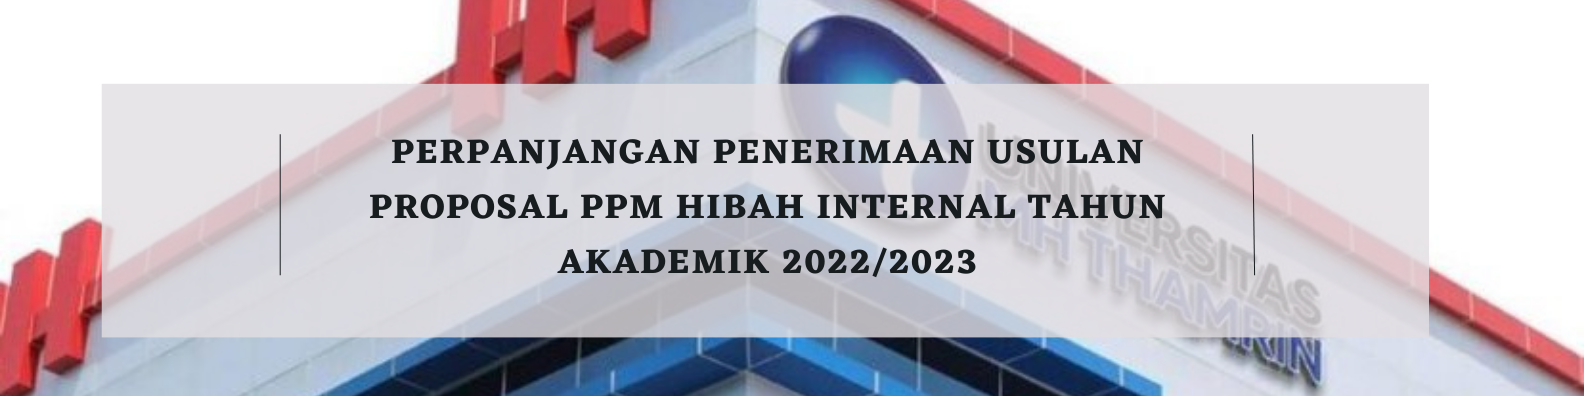 Perpanjangan Penerimaan Usulan Proposal PPM Hibah Internal Tahun Akademik 2022/2023